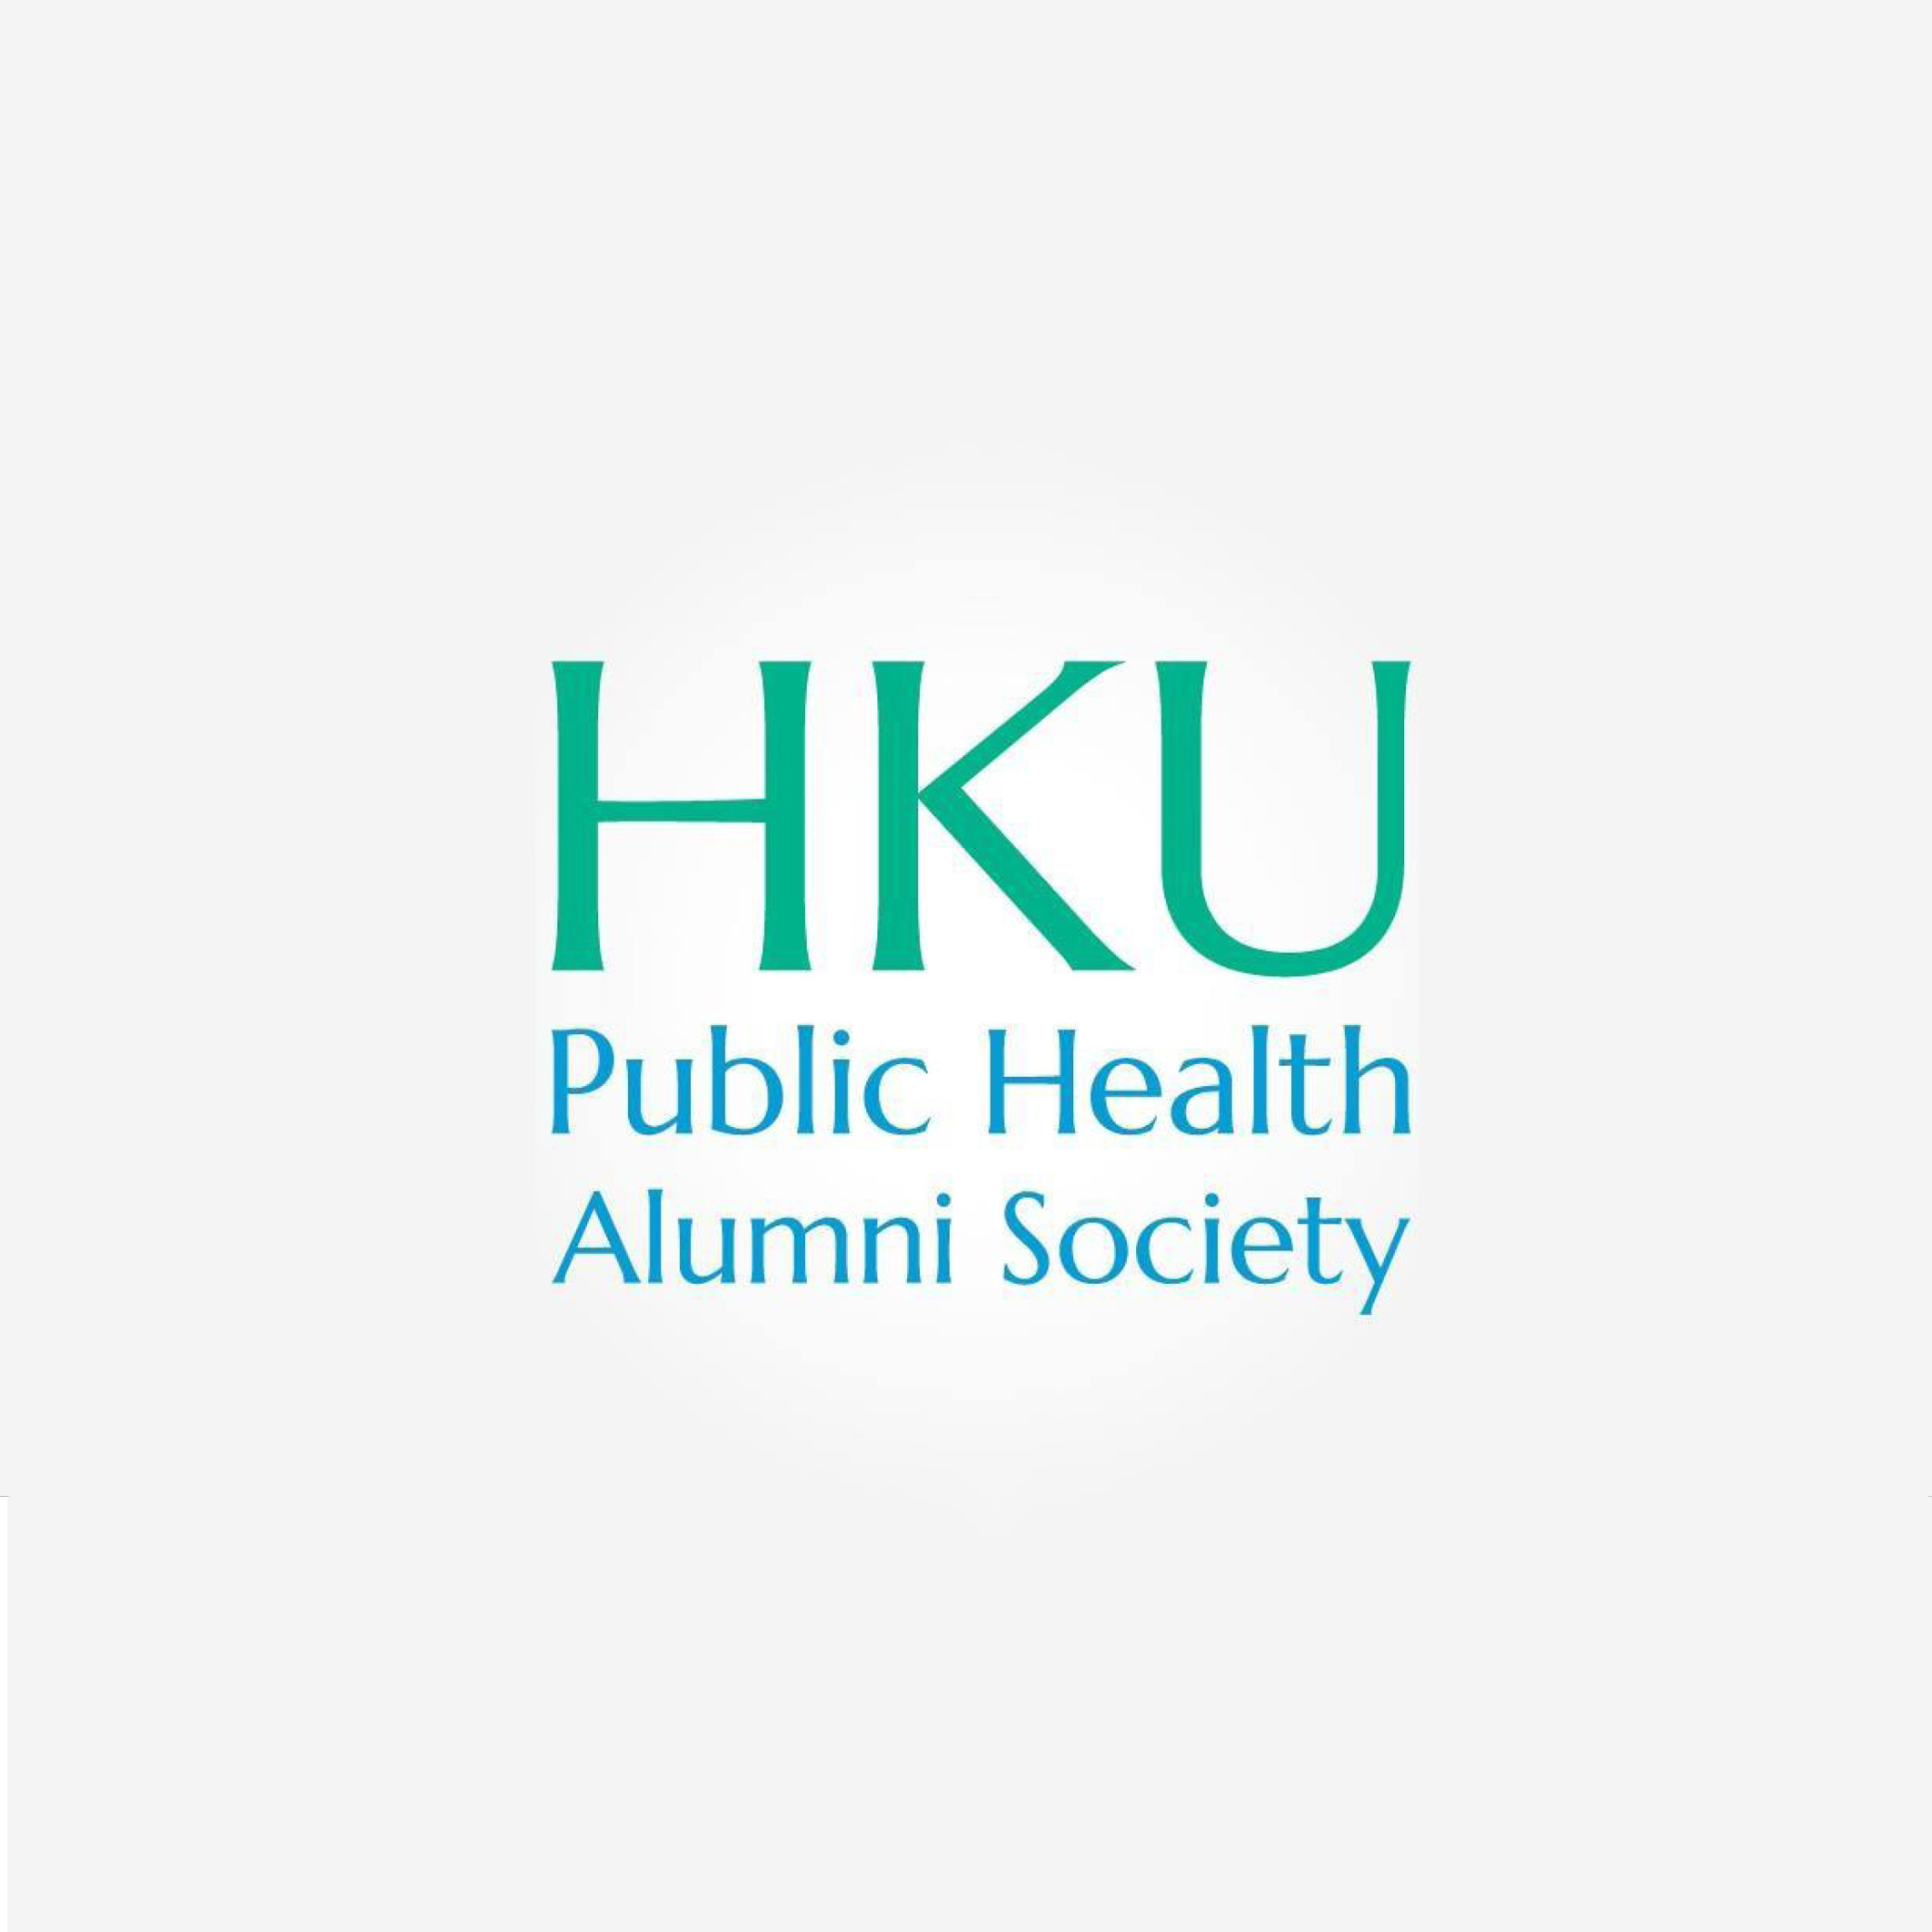 Logo of HKUMed